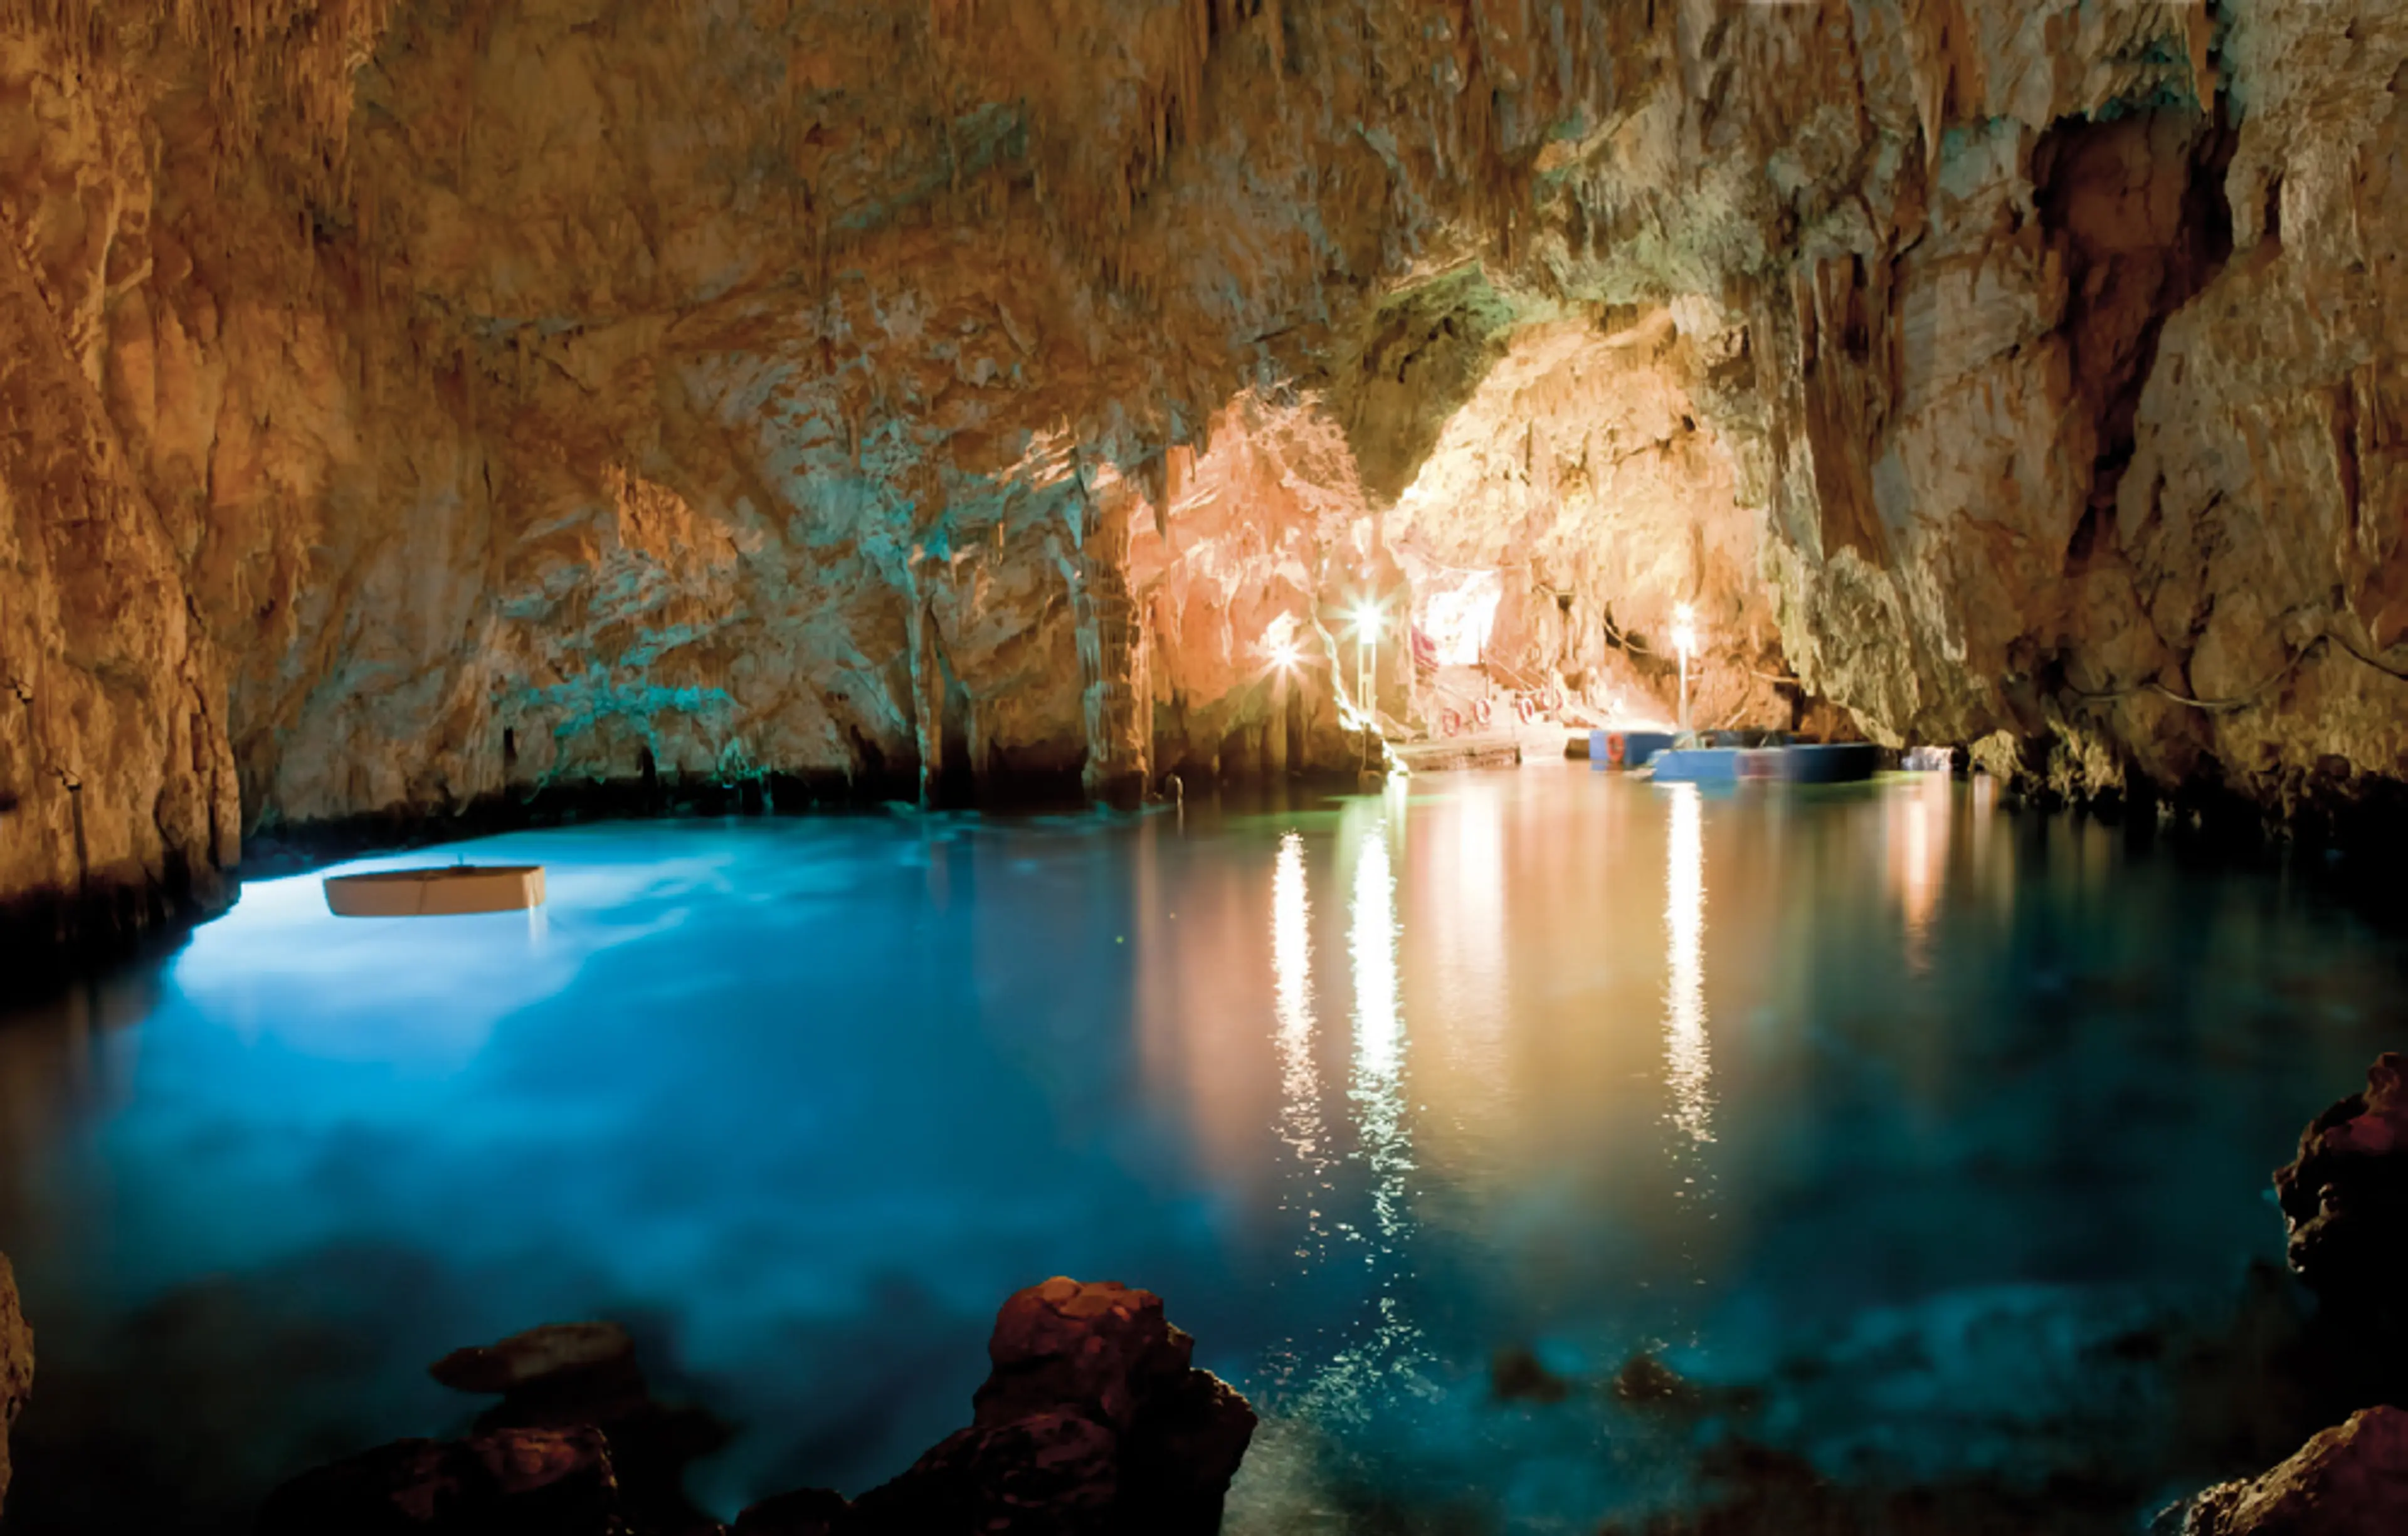 Grotta dello Smeraldo (Emerald Grotto)